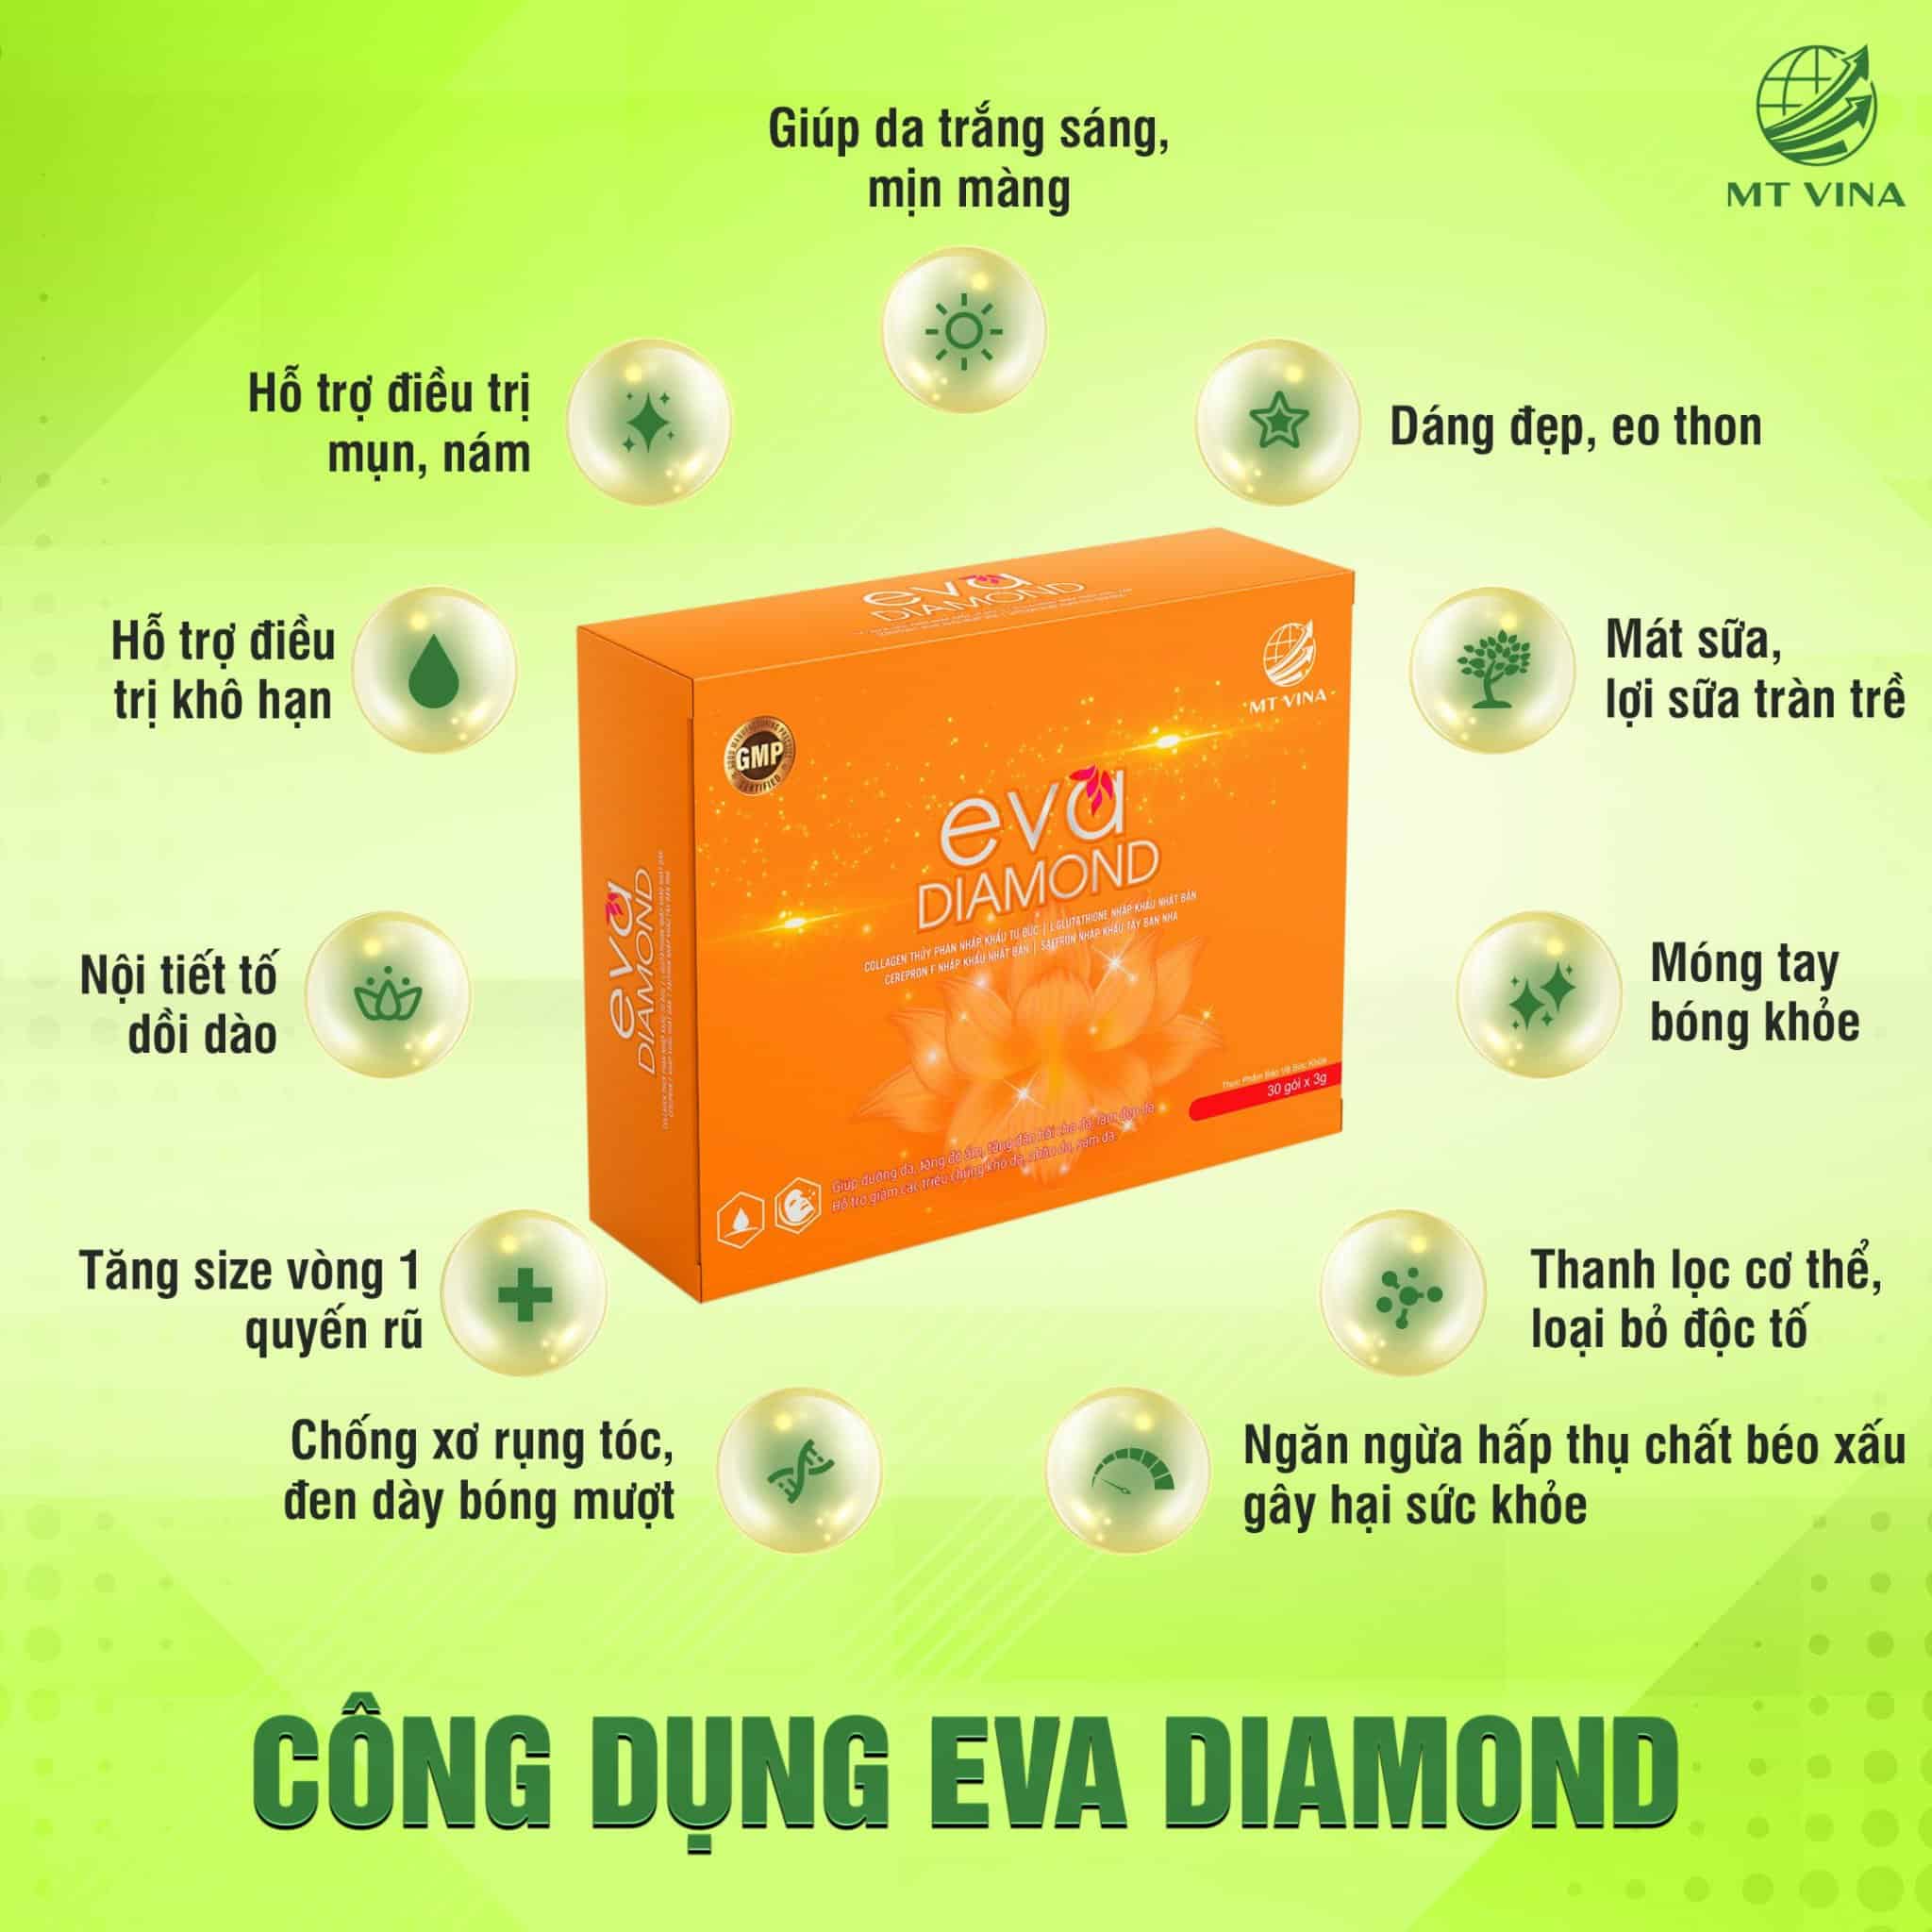 Eva diamond tại Vĩnh Phúc